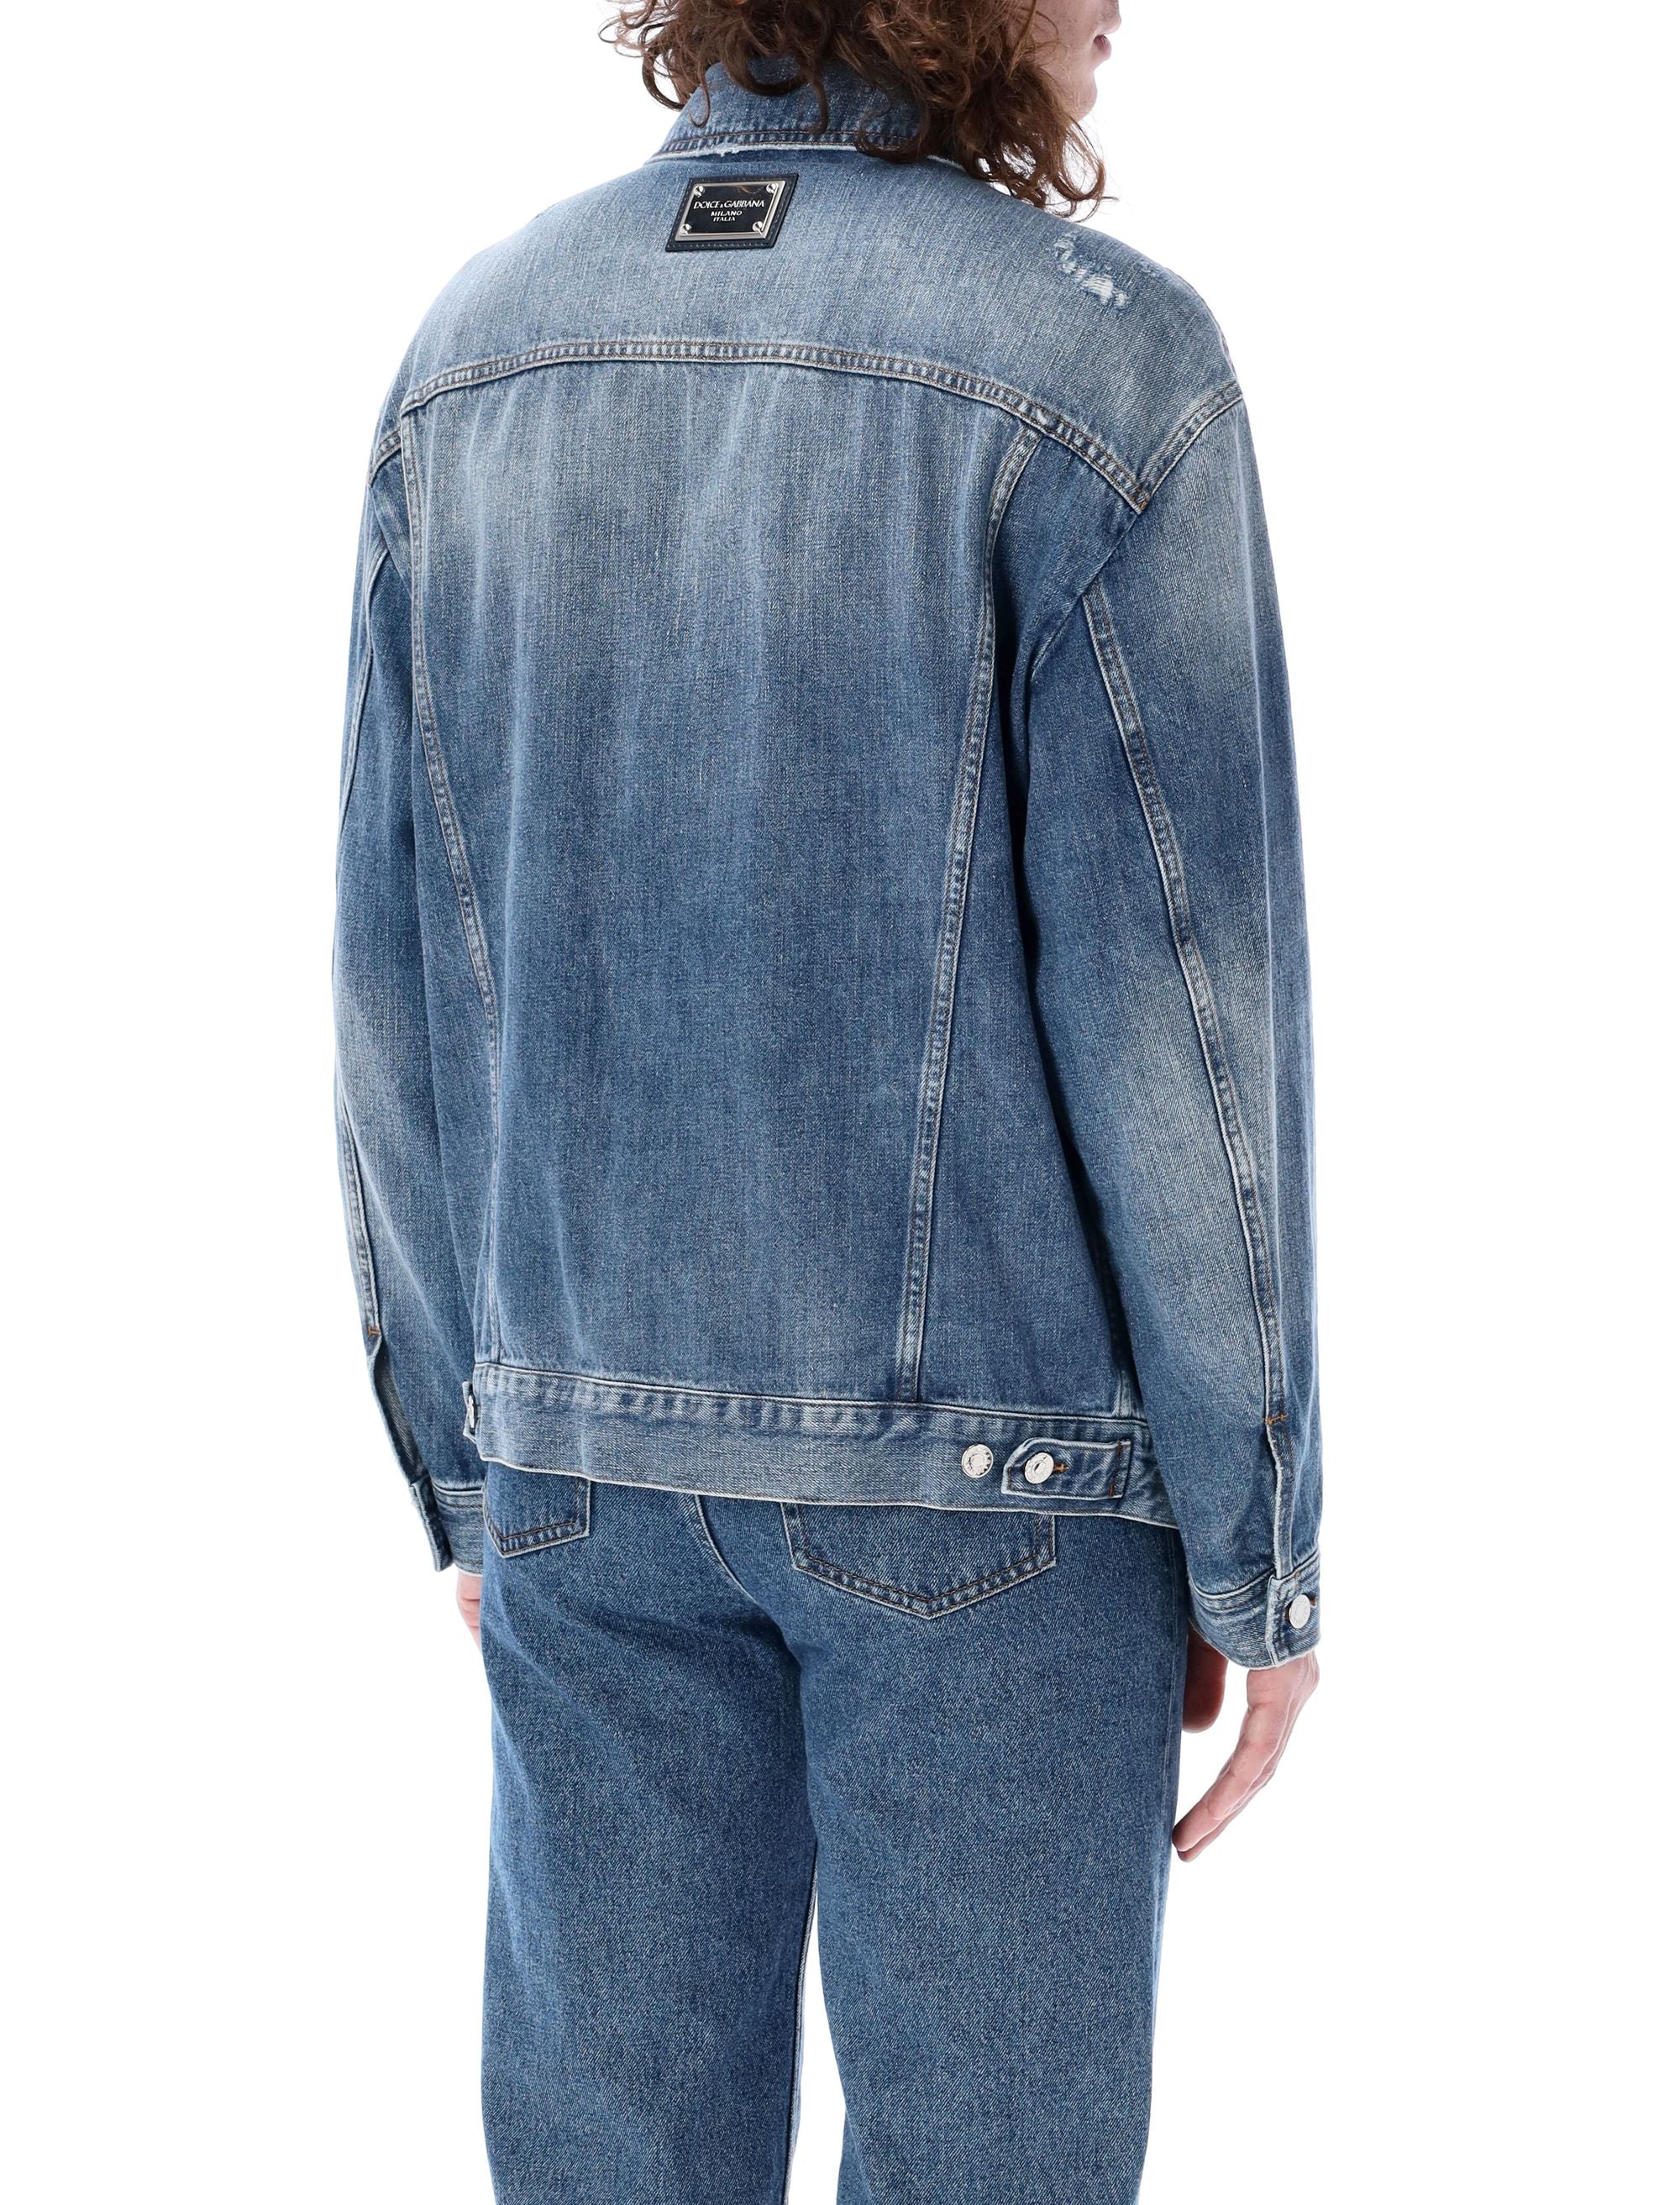 Shop Dolce & Gabbana Men's Blue Denim Jacket With Branded Buttons And Adjustable Details